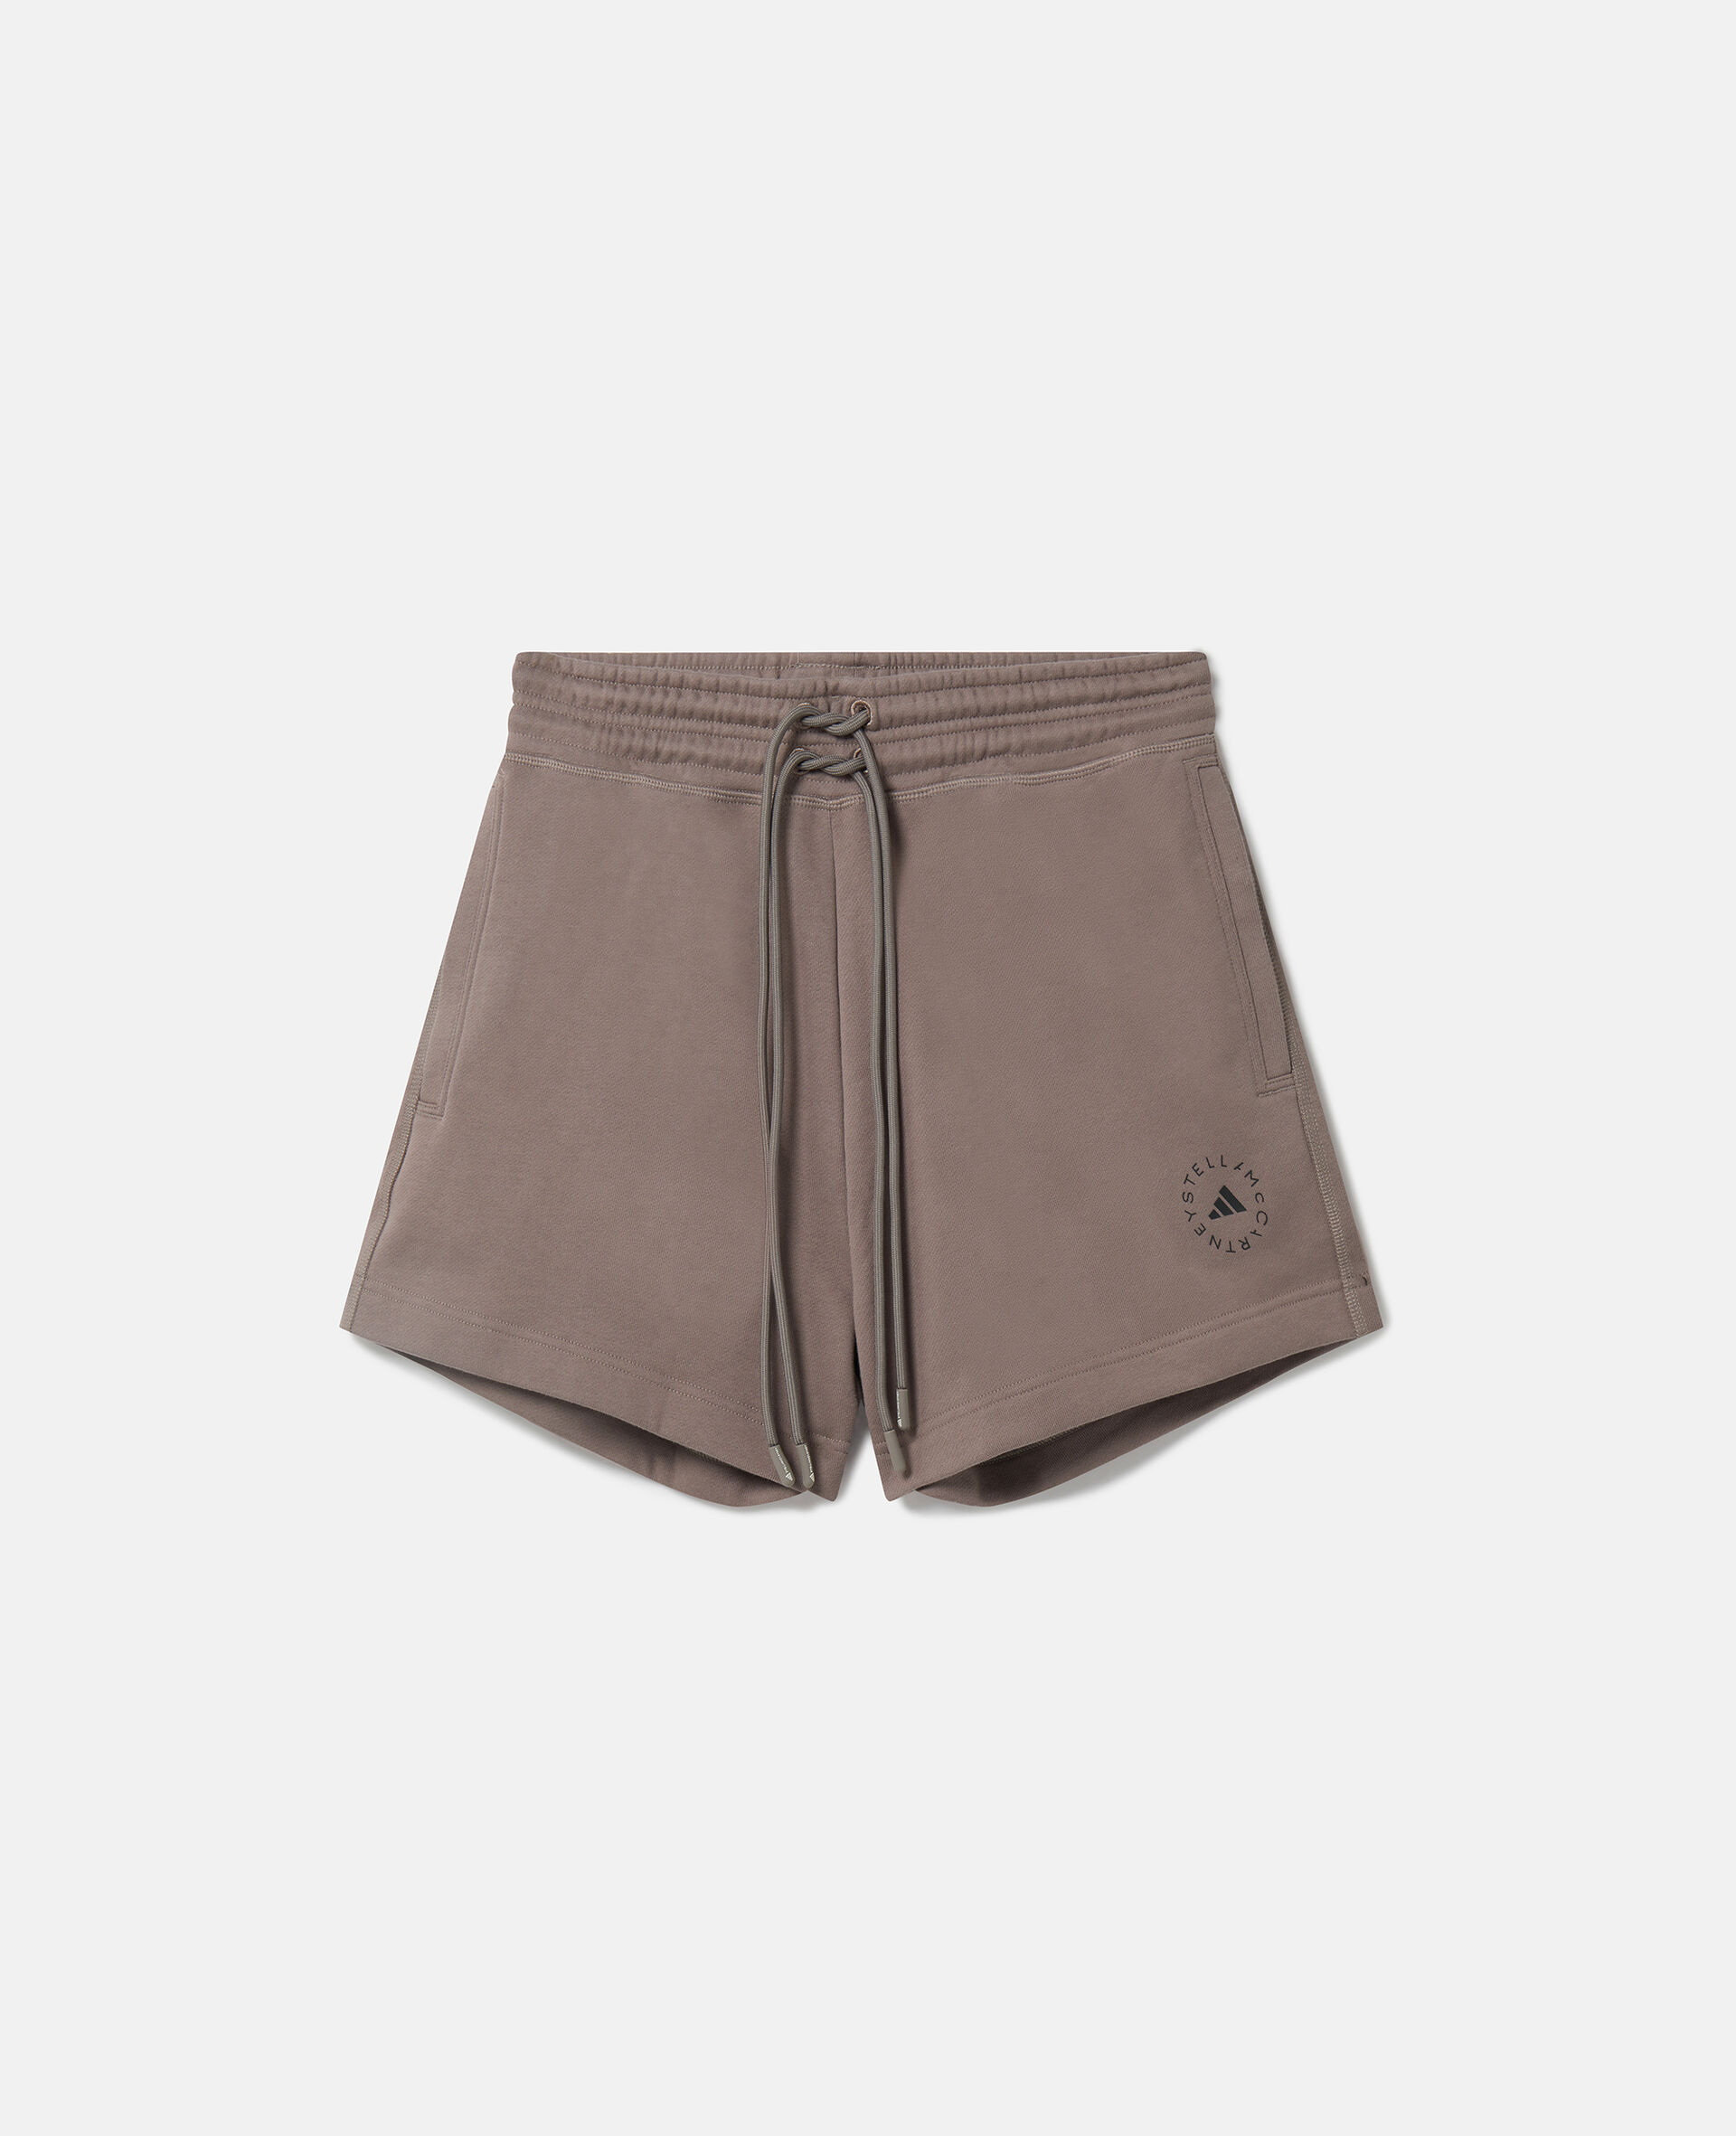 Shorts in spugna di cotone con logo TrueCasuals-Marrone-medium